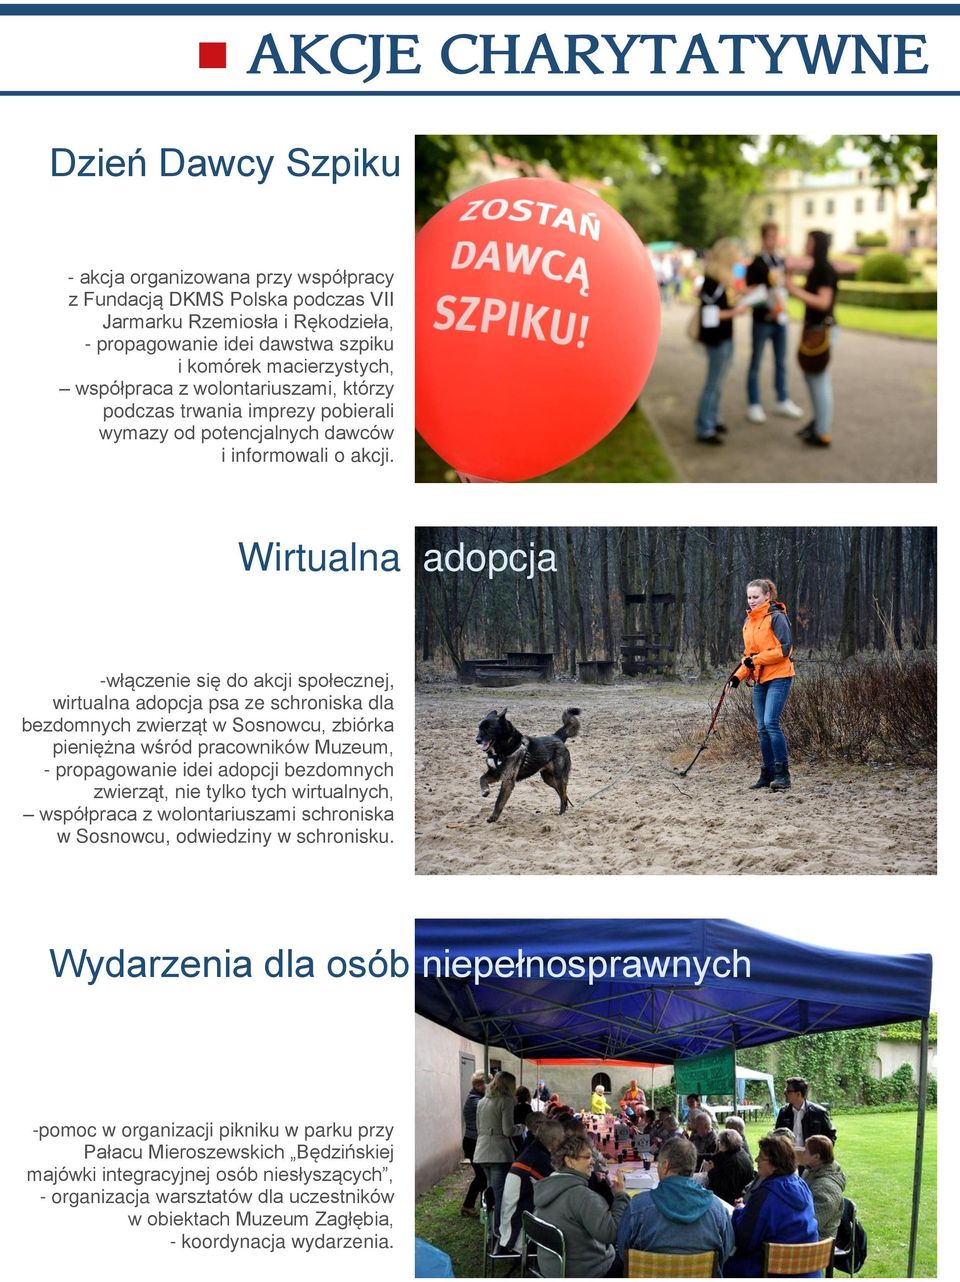 Wirtualna adopcja -włączenie się do akcji społecznej, wirtualna adopcja psa ze schroniska dla bezdomnych zwierząt w Sosnowcu, zbiórka pieniężna wśród pracowników Muzeum, - propagowanie idei adopcji